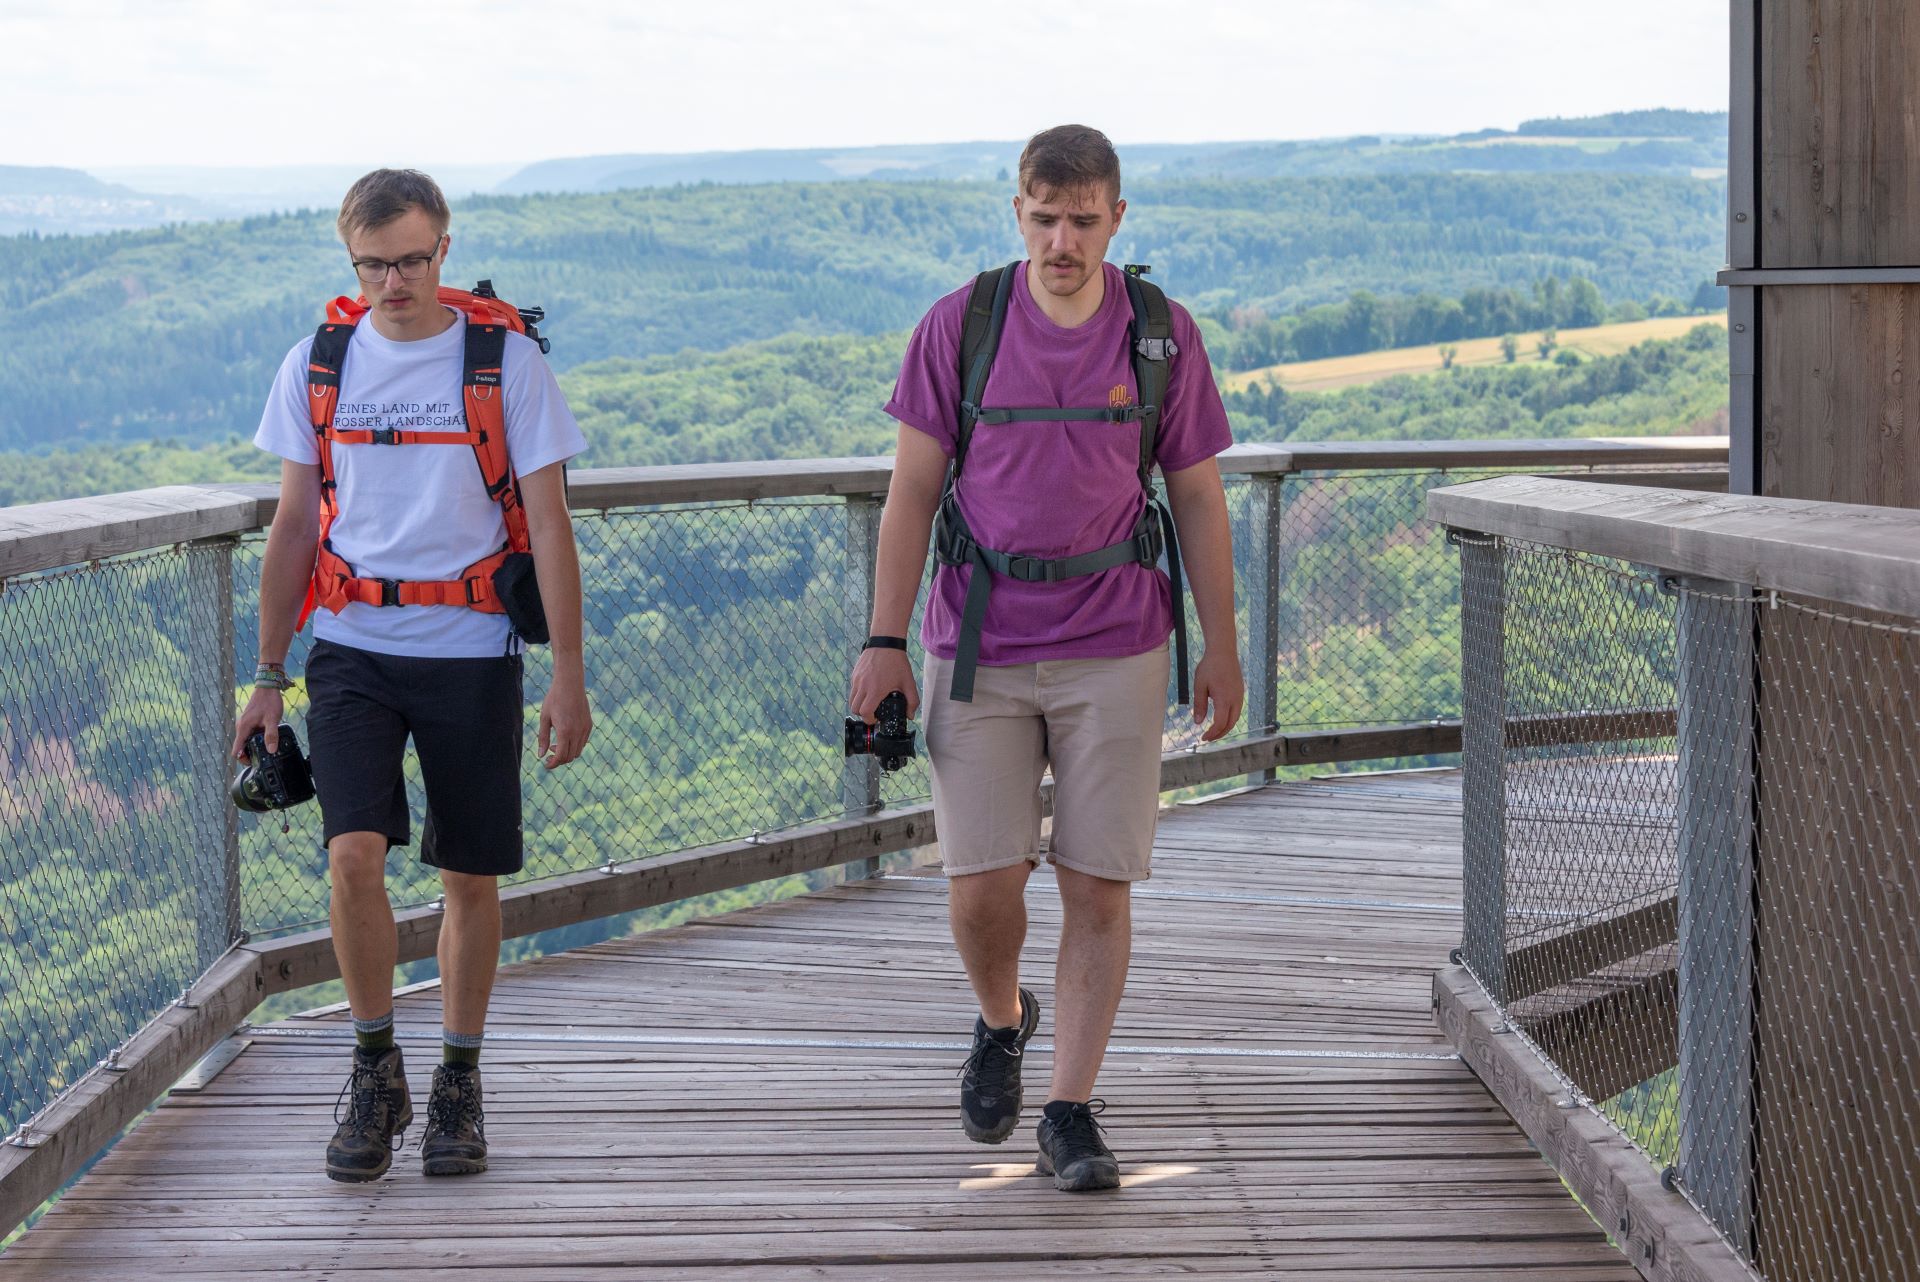 Deux membres du collectif de photographes Saarroamers sont photographiés sur une passerelle en bois qui sert de point d'observation sur la Sarre.